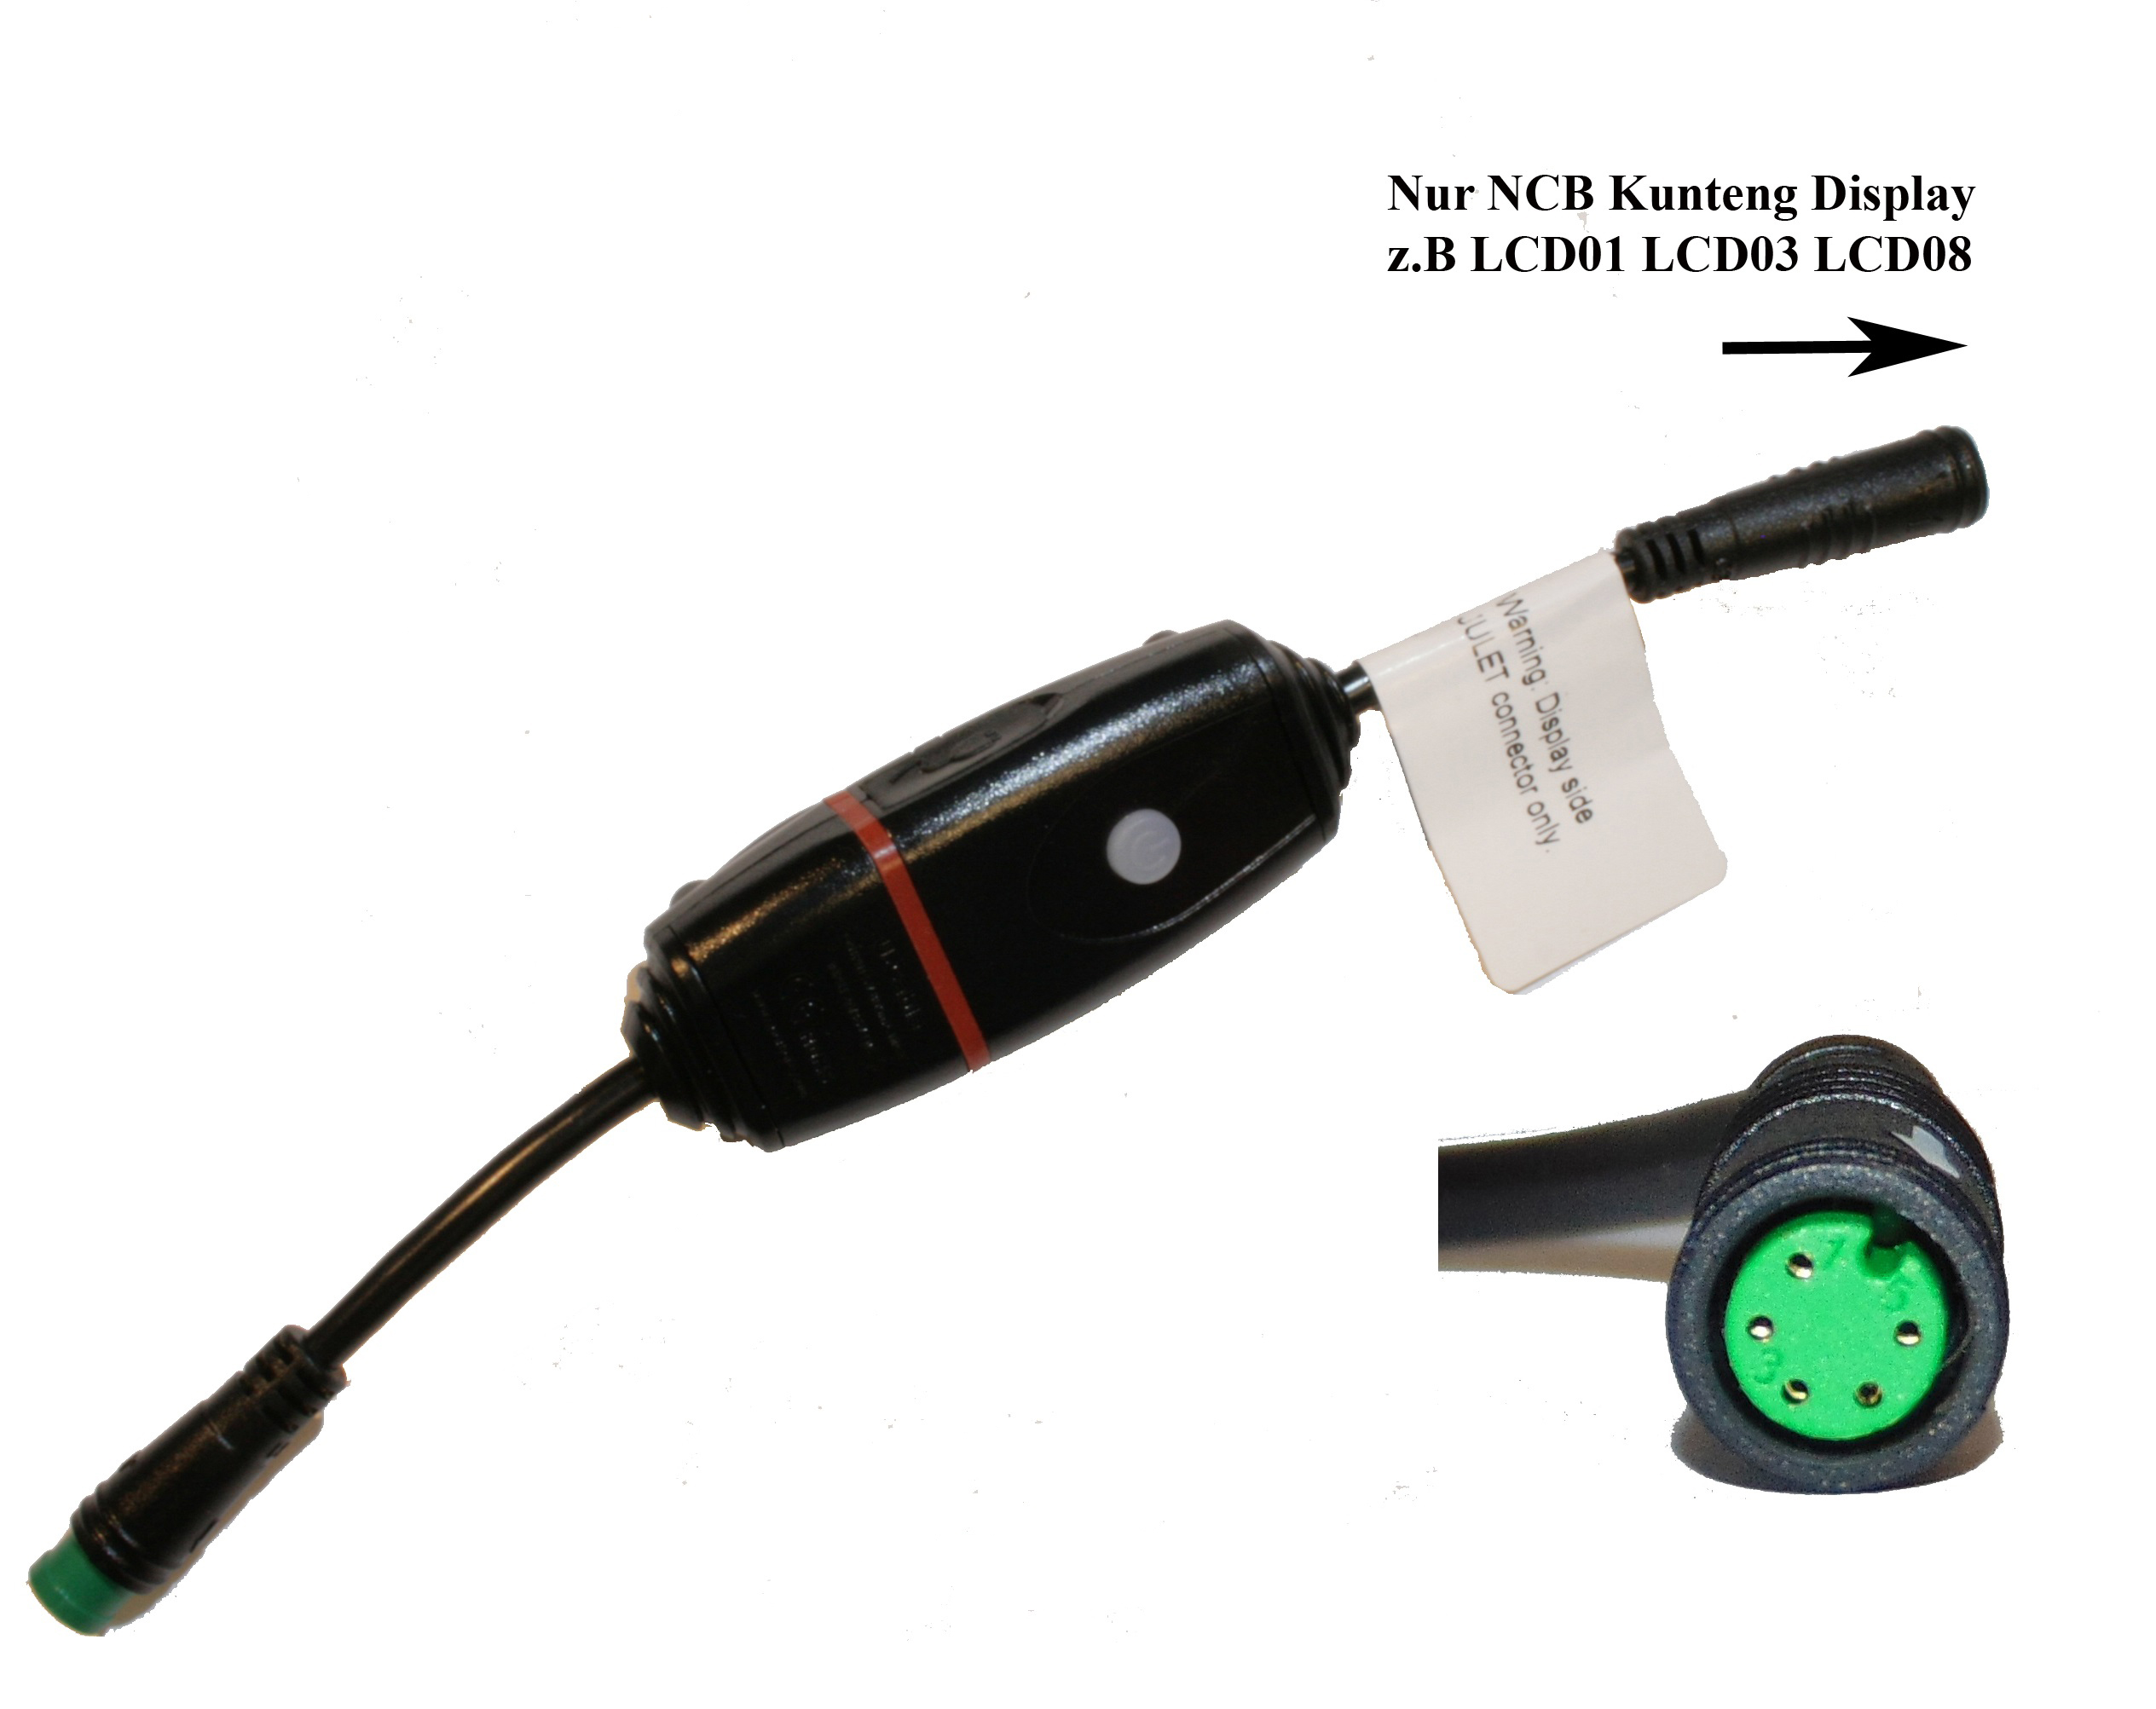 Eigenbau E-Bike PEDELEC KM-USB-NCB NCB USB Display Ladebuchse 500mA f.  KUNTENG King-Meter